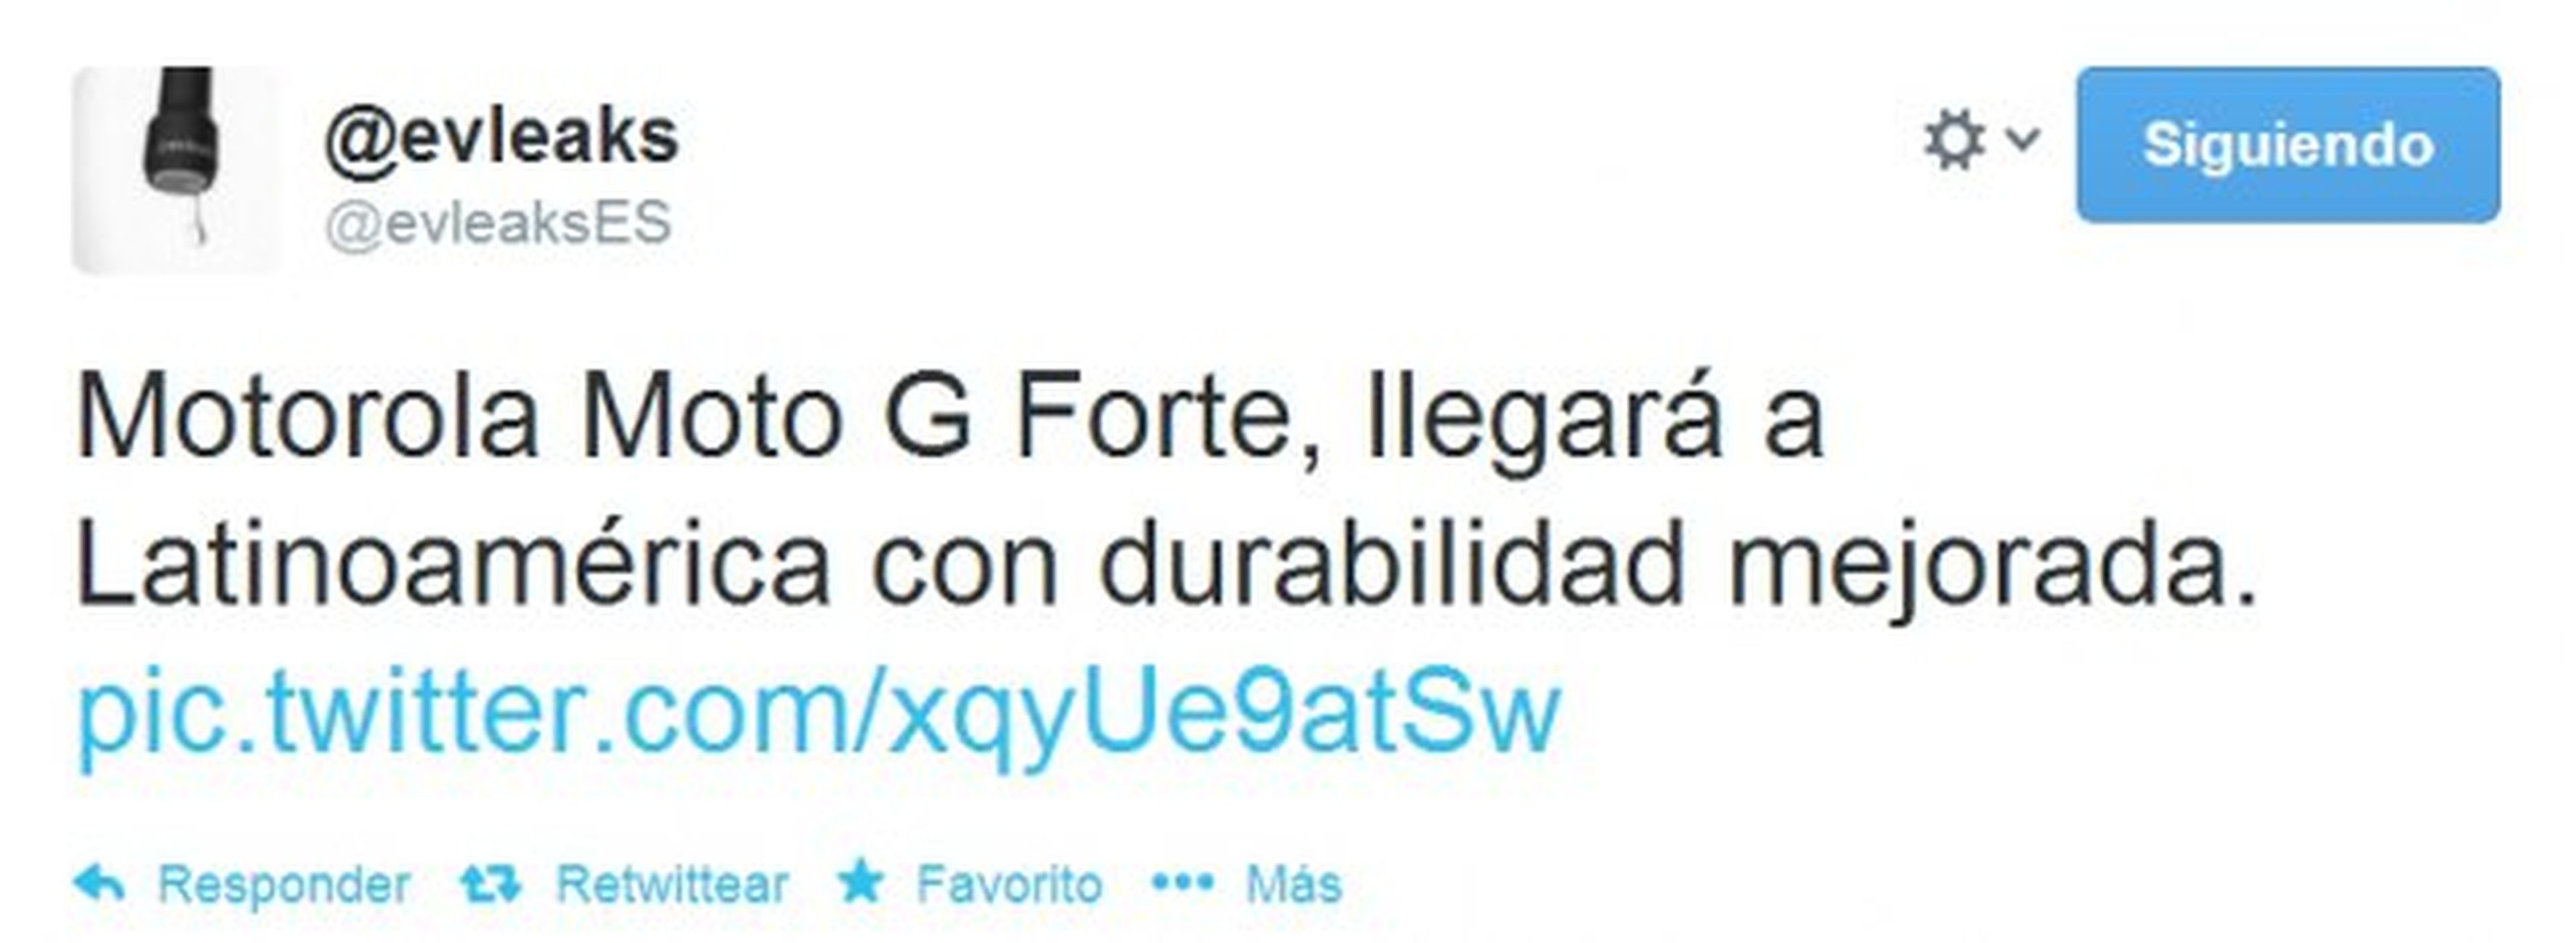 Moto G Forte en Latinoamérica